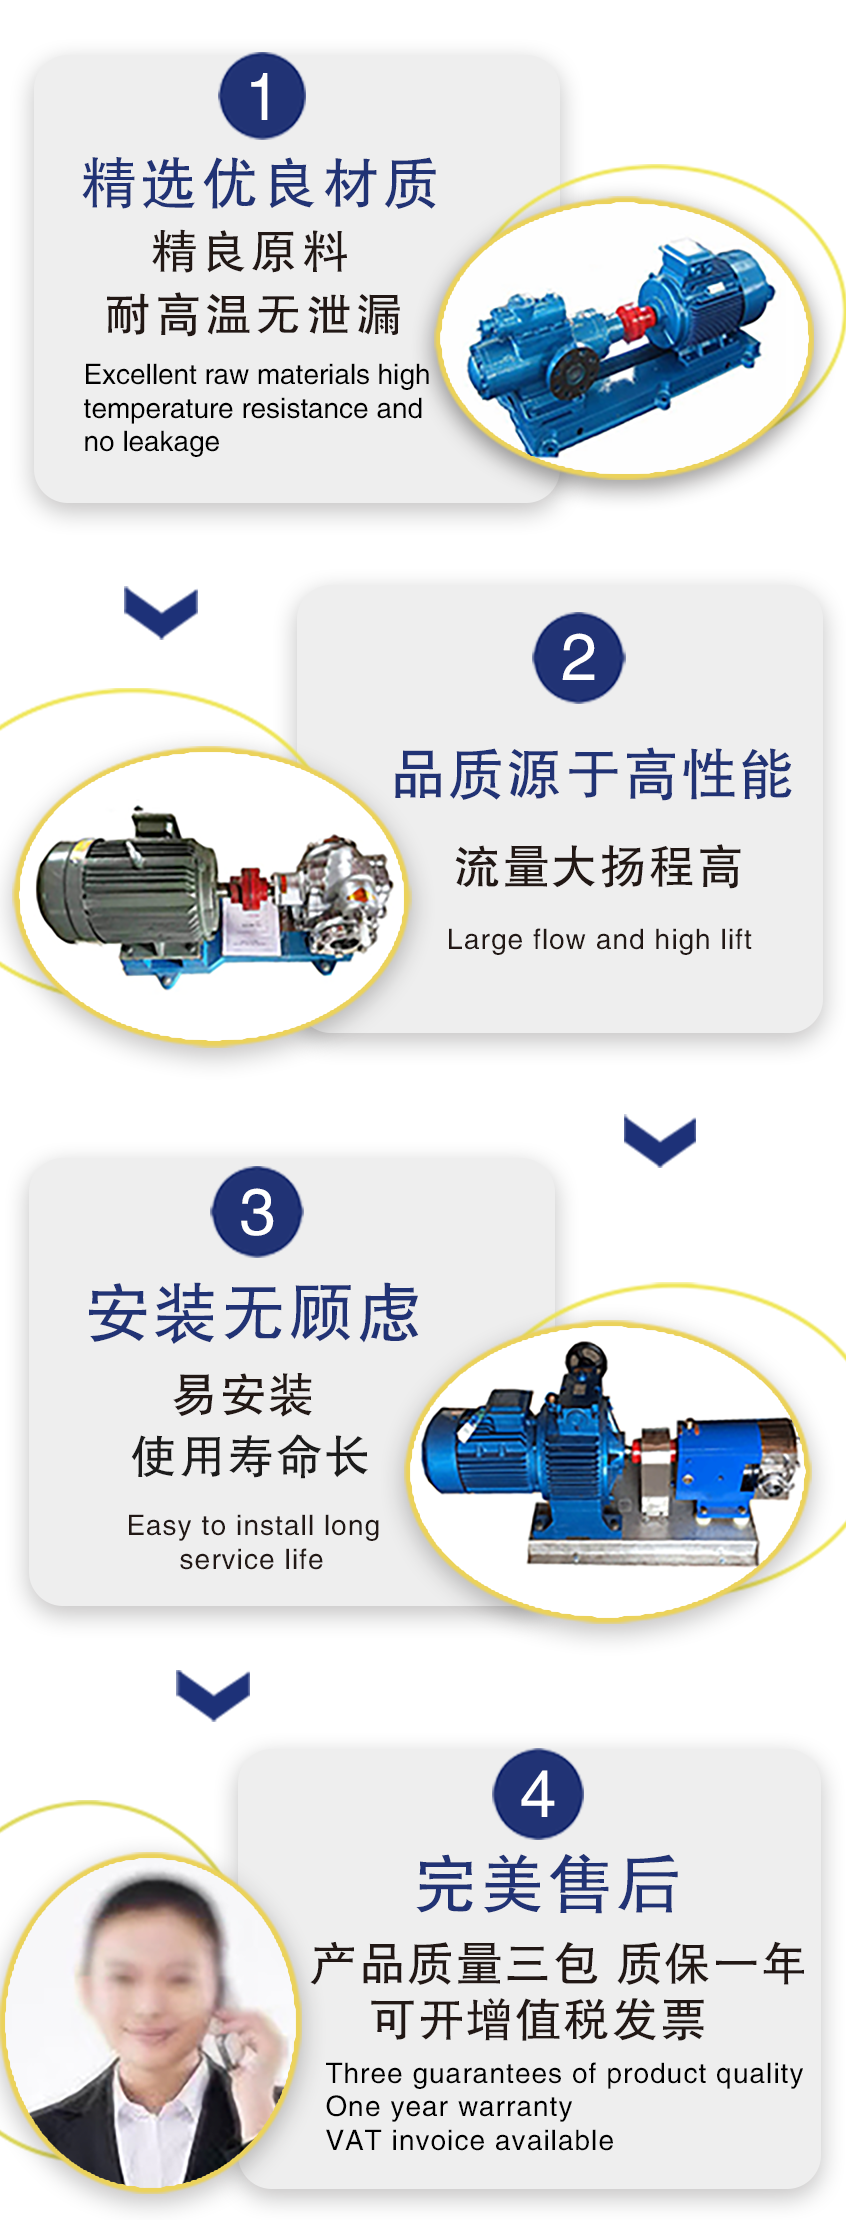 高粘度转子泵 鸿海泵业  不锈钢凸轮泵 面酱输送泵 凸轮泵 凸轮转子泵 现货供应示例图9